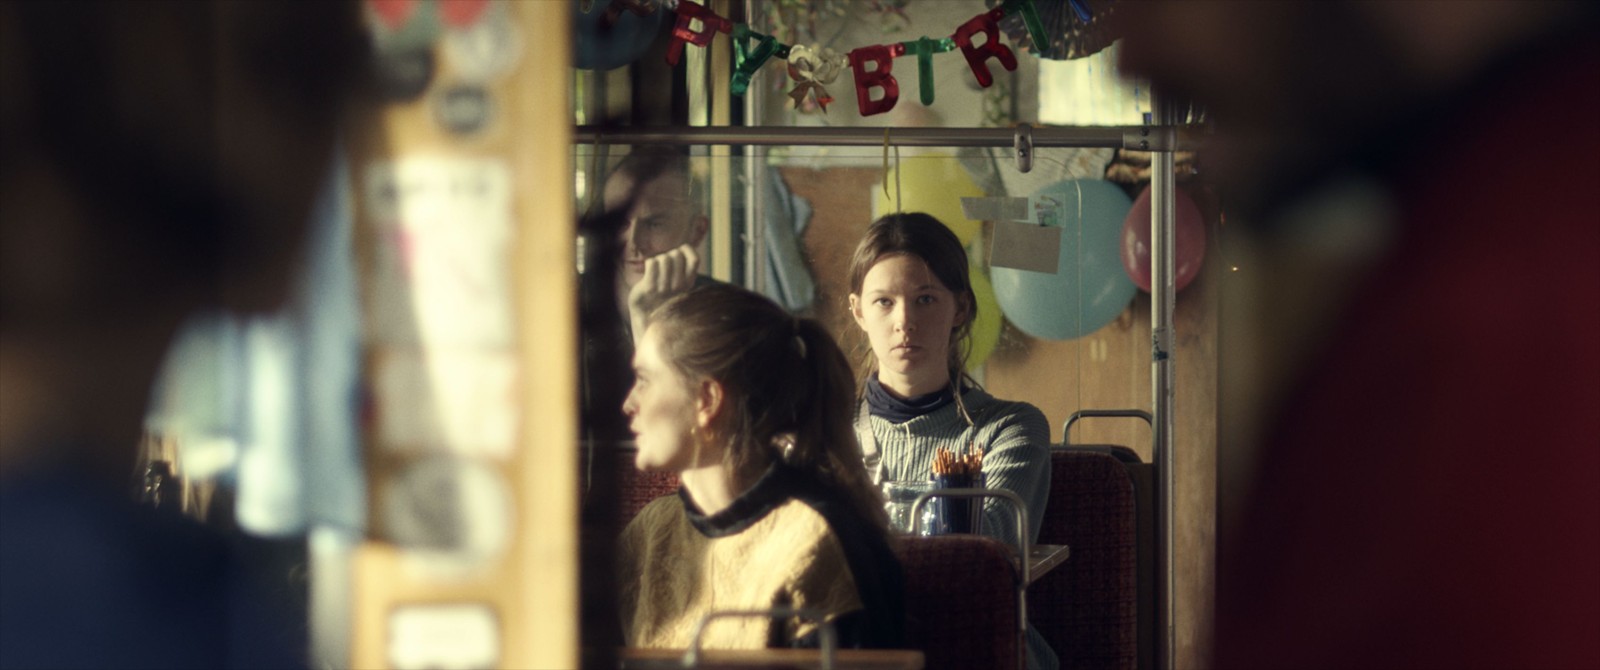 Zwei junge Frauen sitzen hintereinander. Die hintere schaut direkt in die Kamera, über ihr eine bunte Buchstabenkette mit "Happy Birthday".